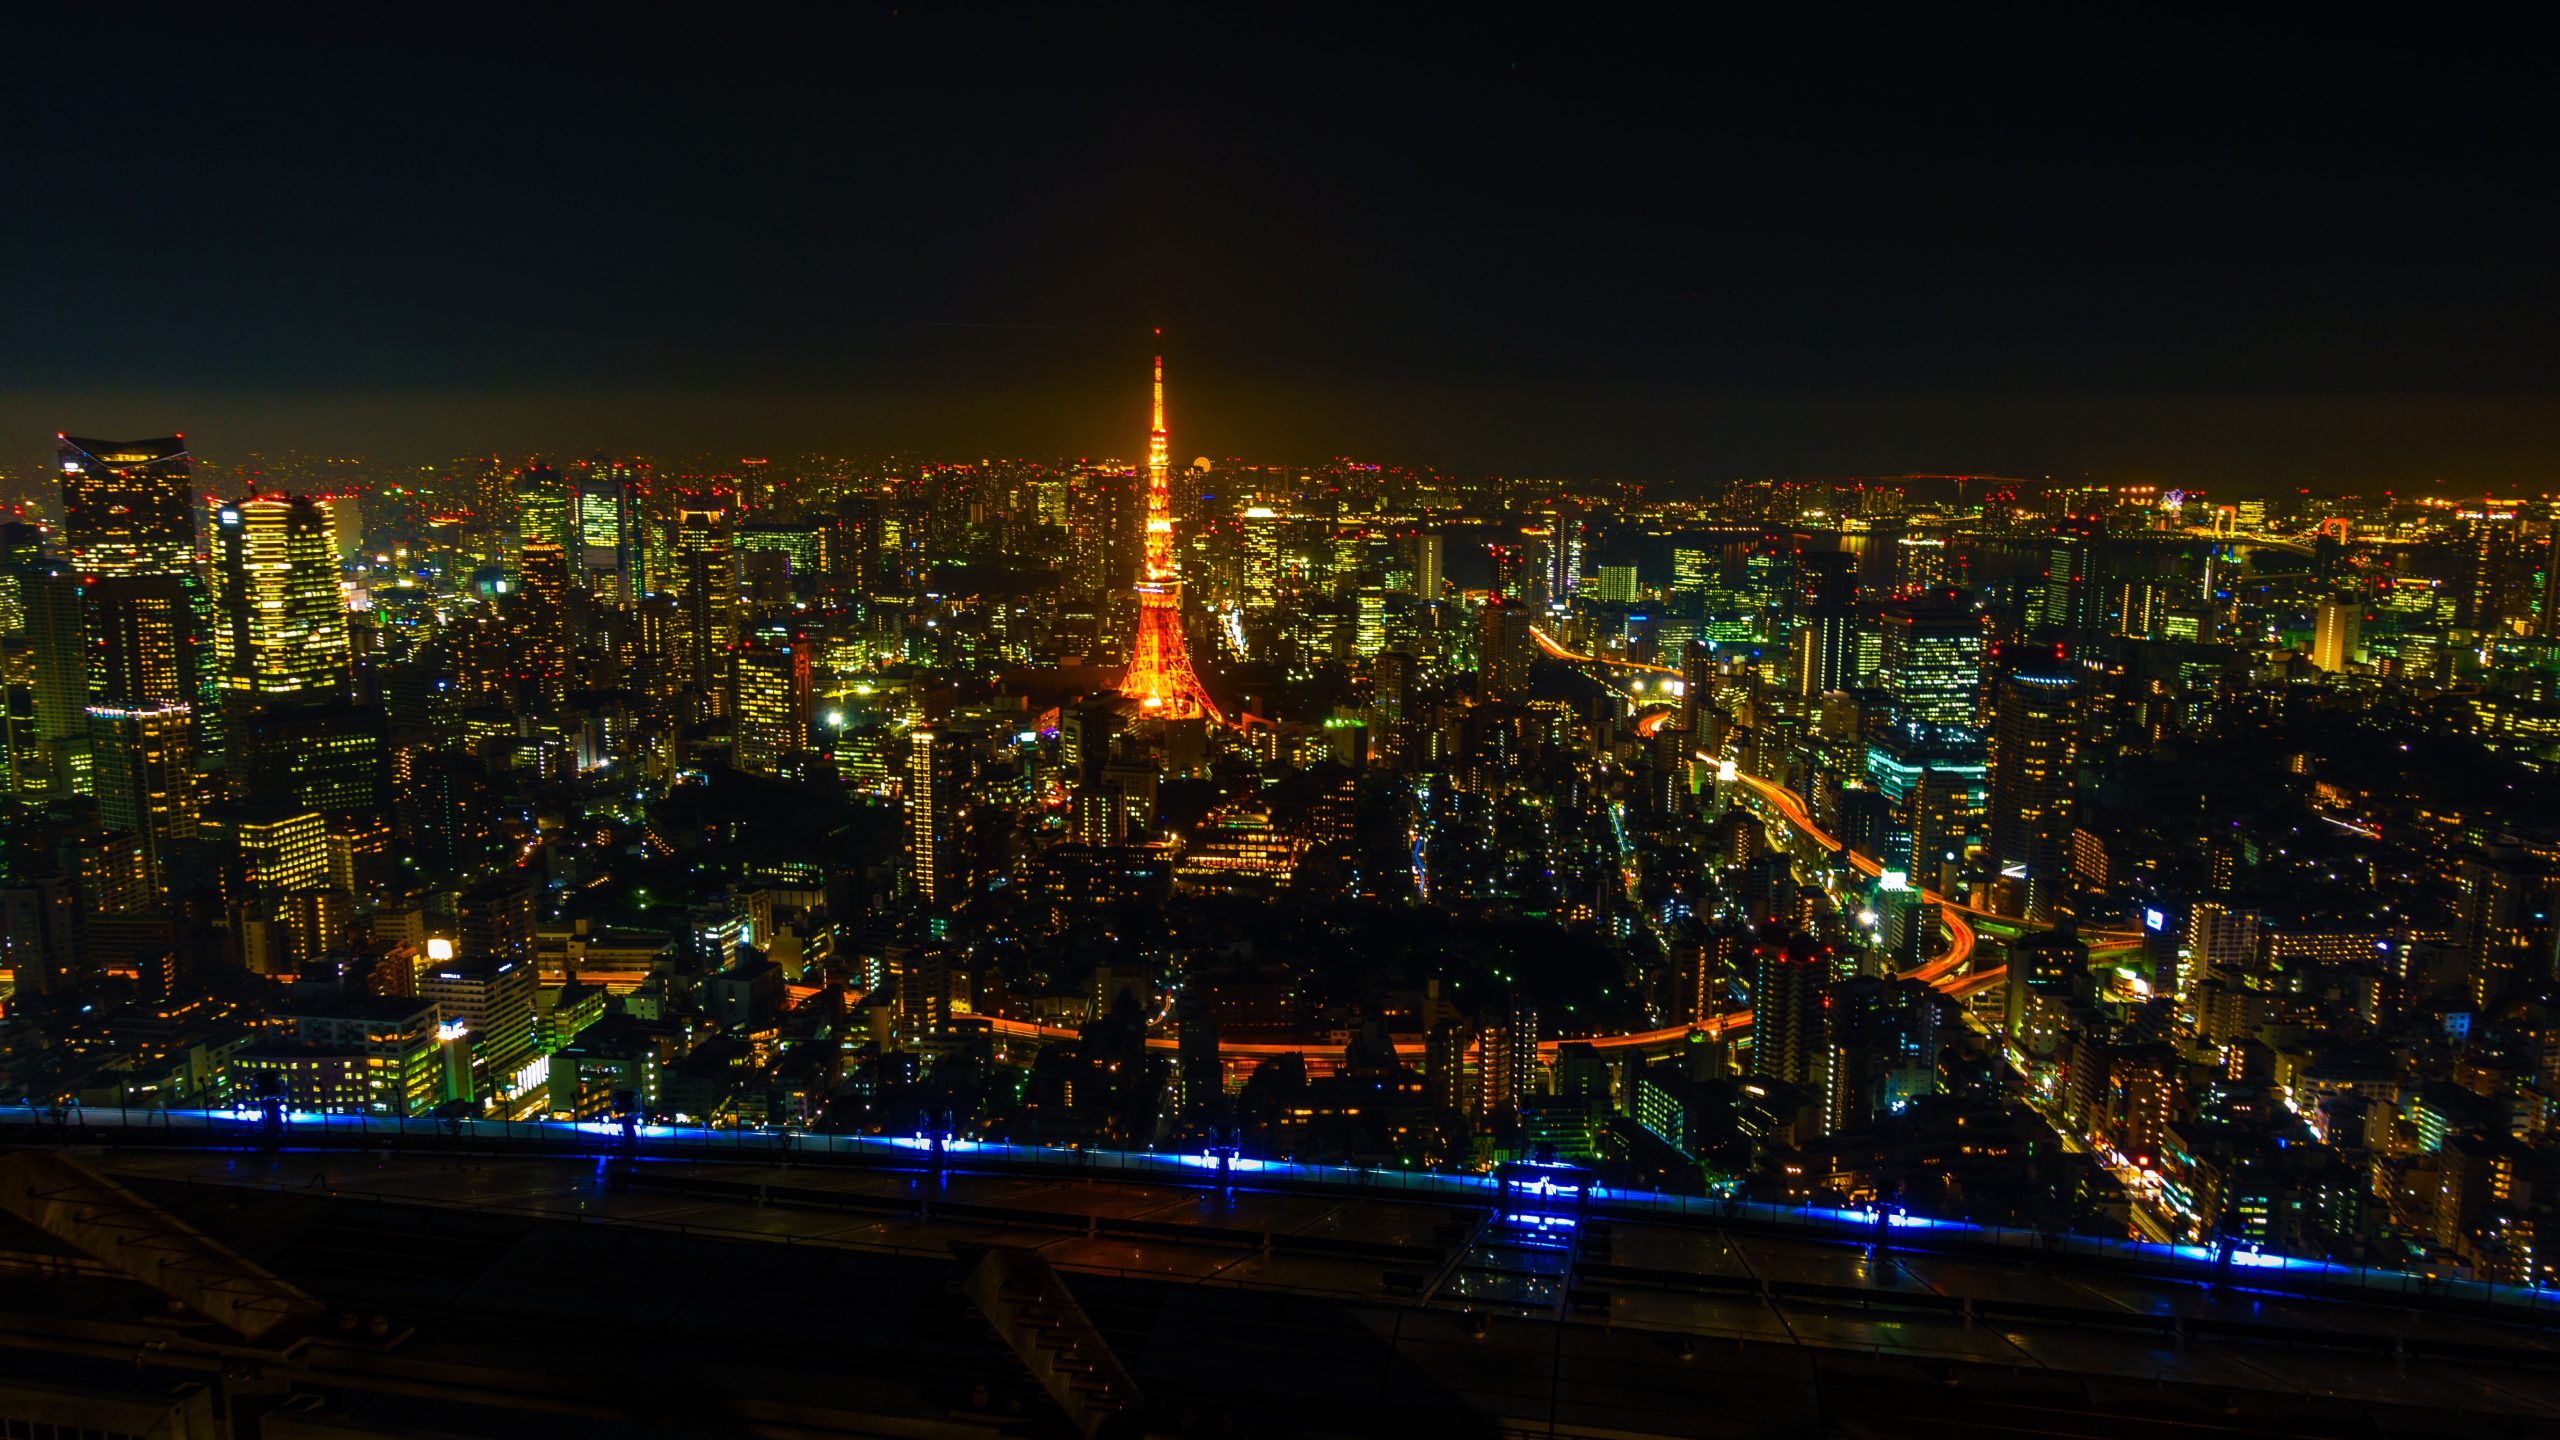 Night views in Japan